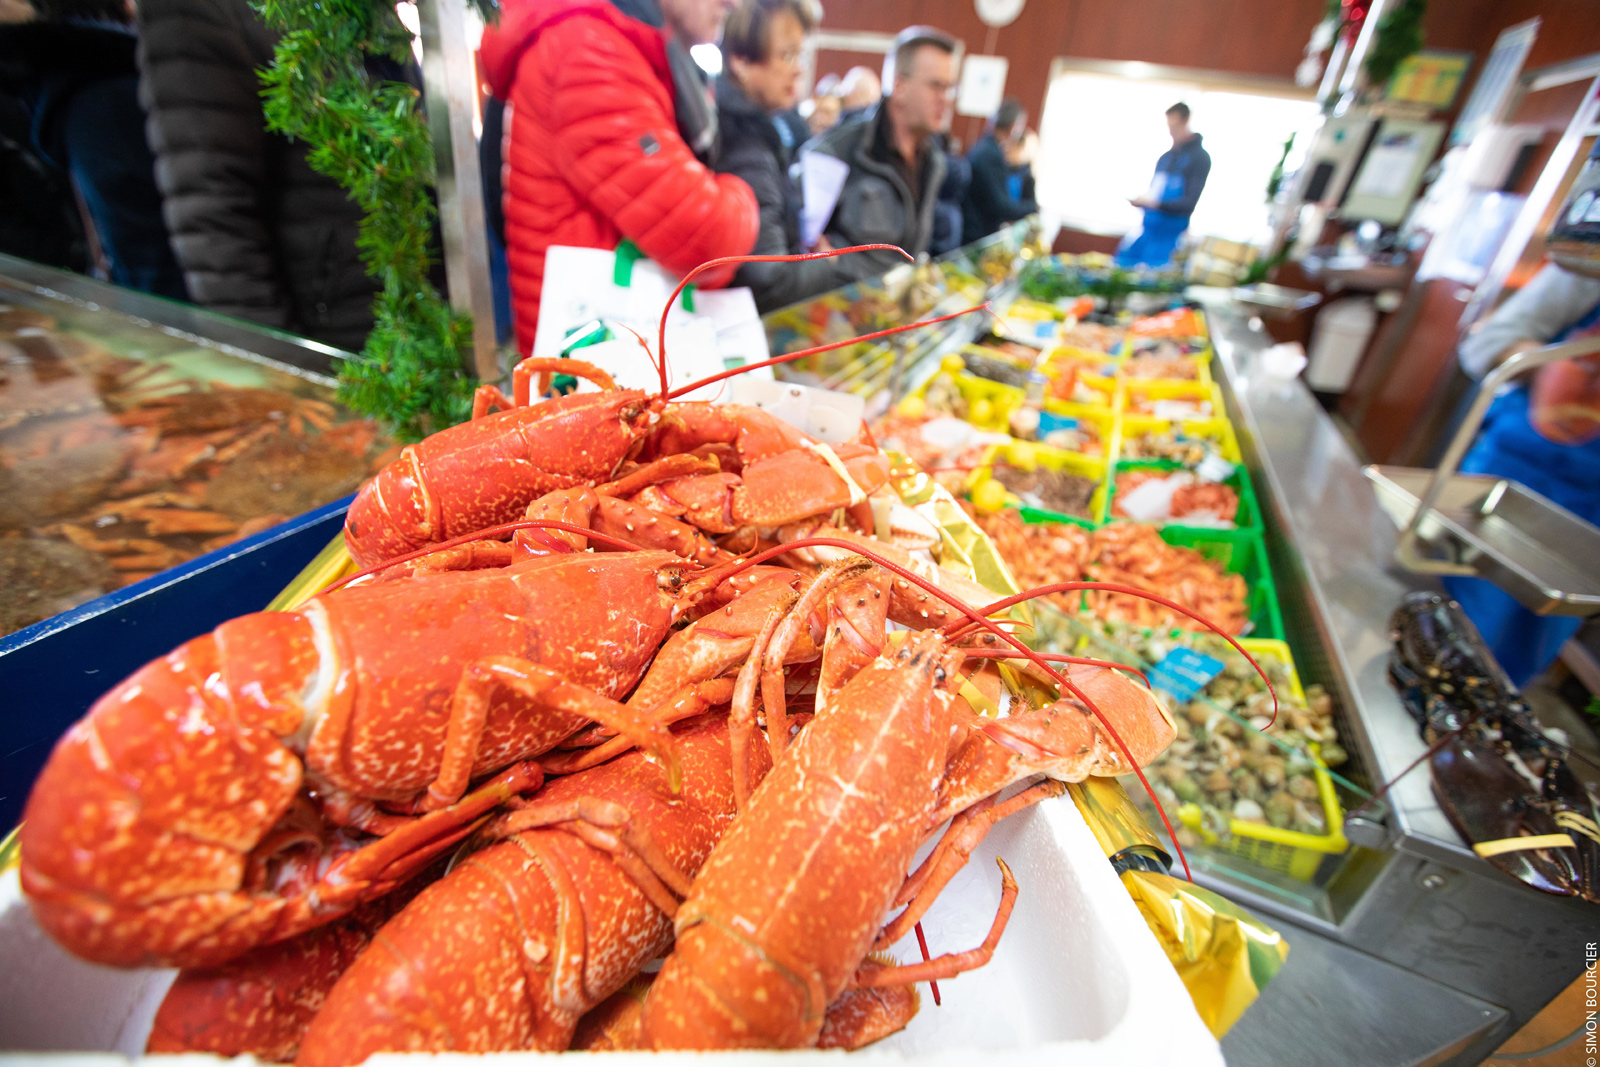 Meilleures ventes poissons, coquillages et crustacés - La Fine Marée